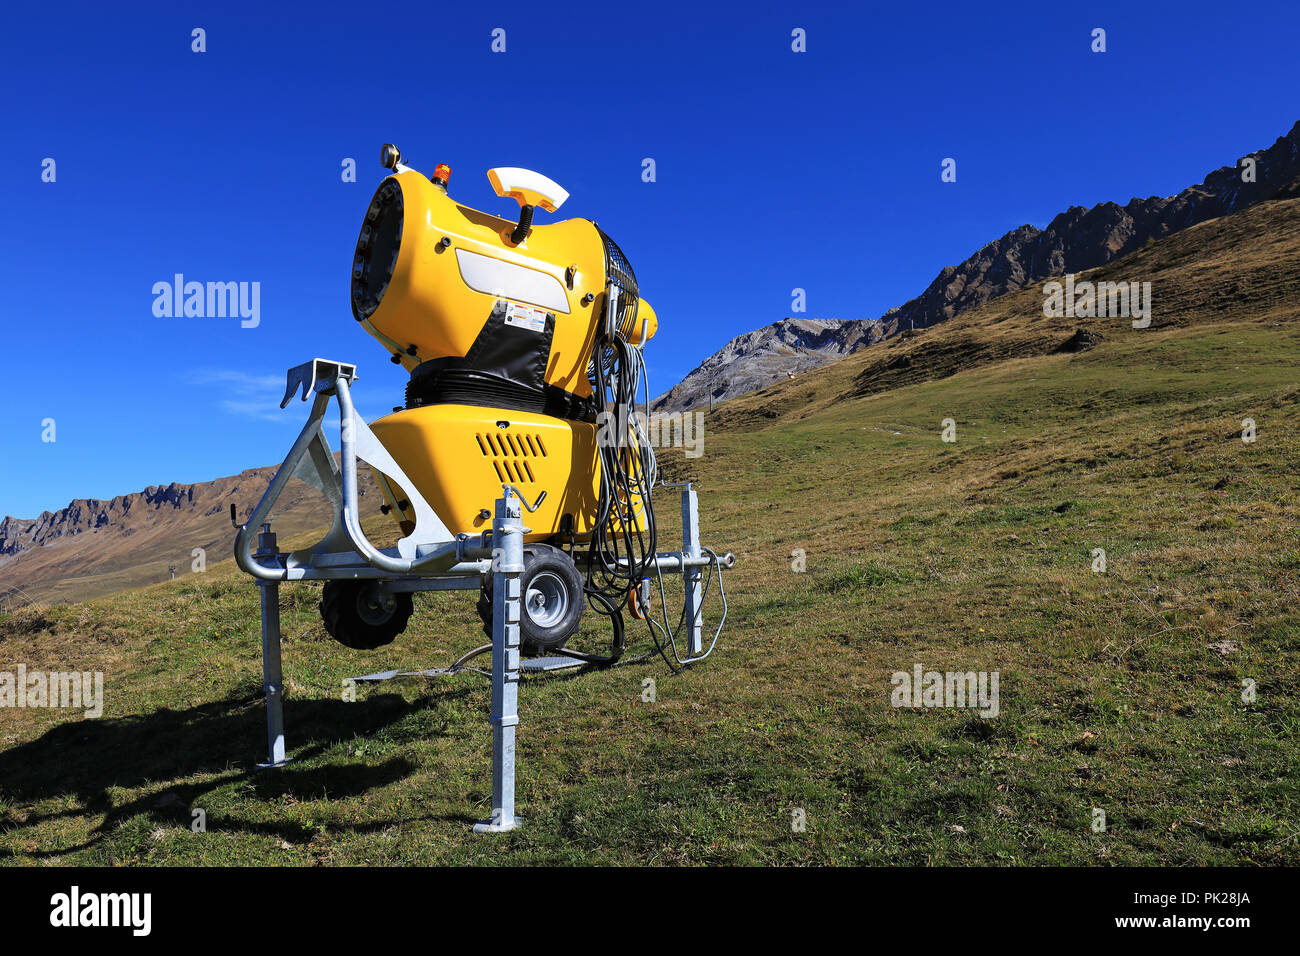 Schnee Maschine in den Schweizer Alpen, Lenzerheide, Schweiz  Stockfotografie - Alamy